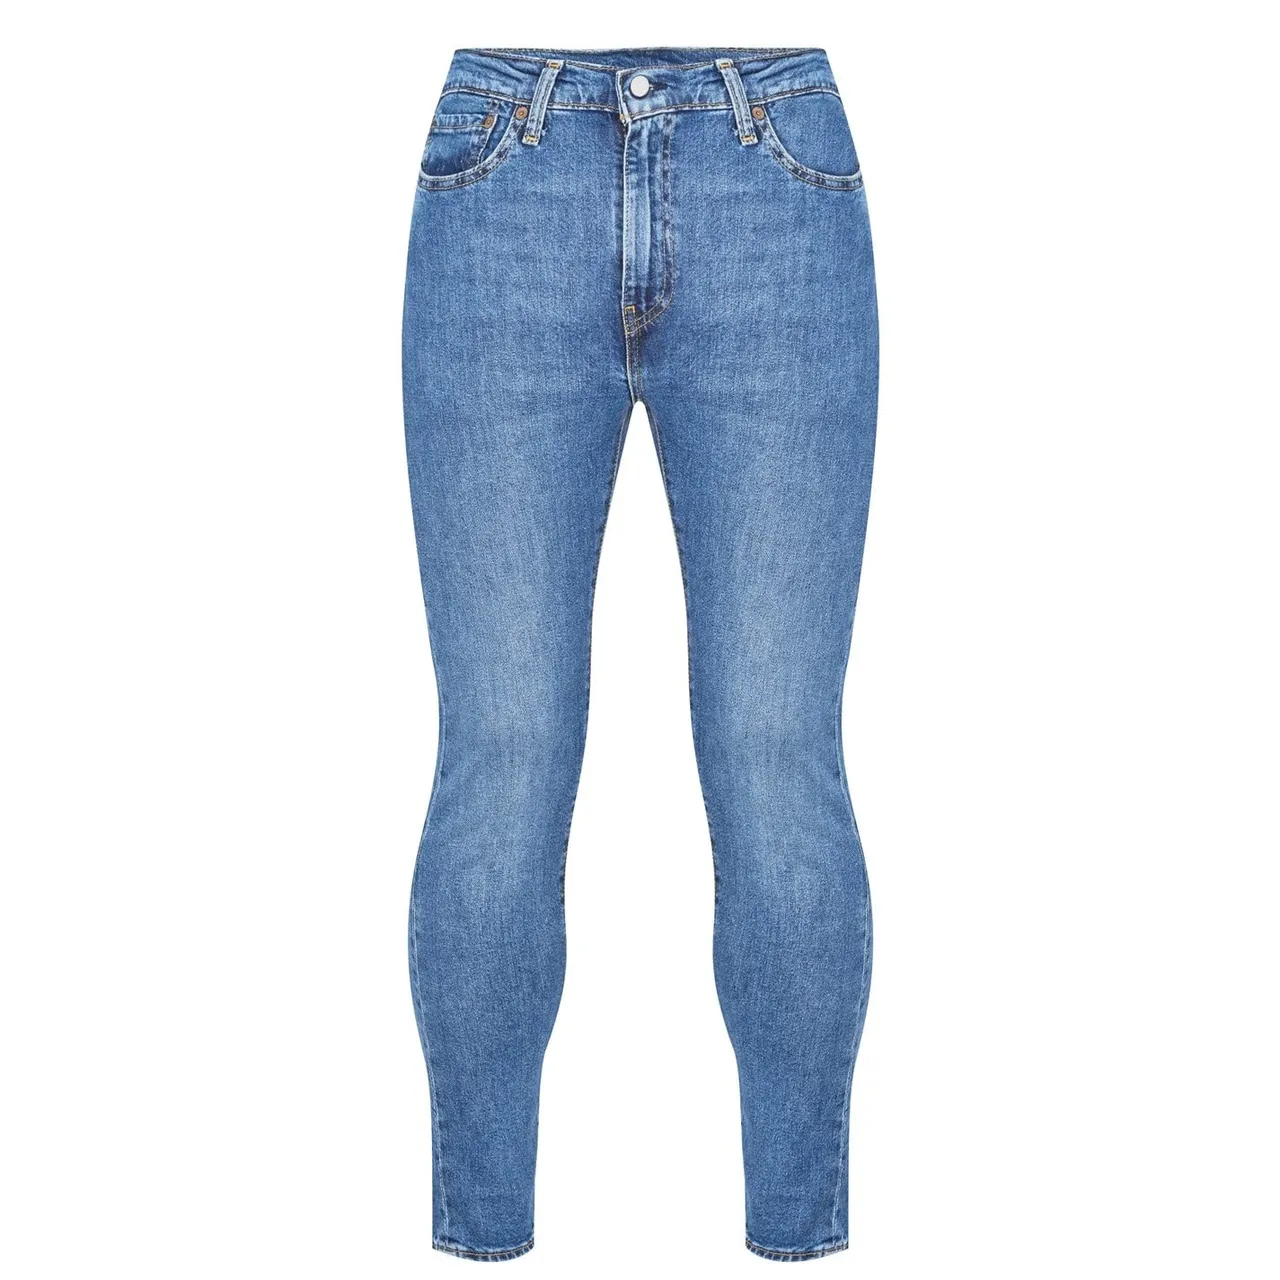 Levi's Men's 510 Skinny Jeans Medium Indigo Worn In (Blue)